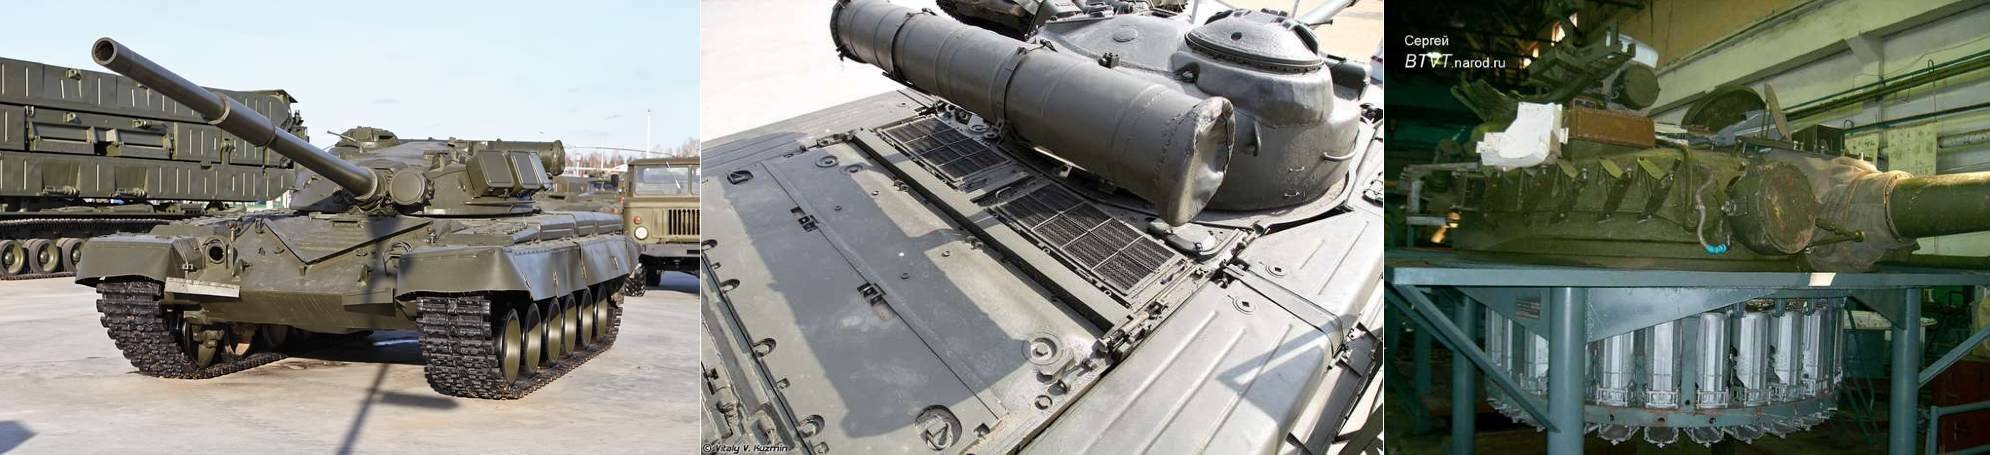 (좌) T-80 전차의 초기 양산 유형, (중) T-80 전차의 가스터빈 엔진용 공기 흡입구, (우) 코르지나 방식의 자동장전장치. T-64를 대체하기 위해 상당한 노력을 기울여 제작한 전차가 T-80이었다. <출처 : 네이버 무기백과>